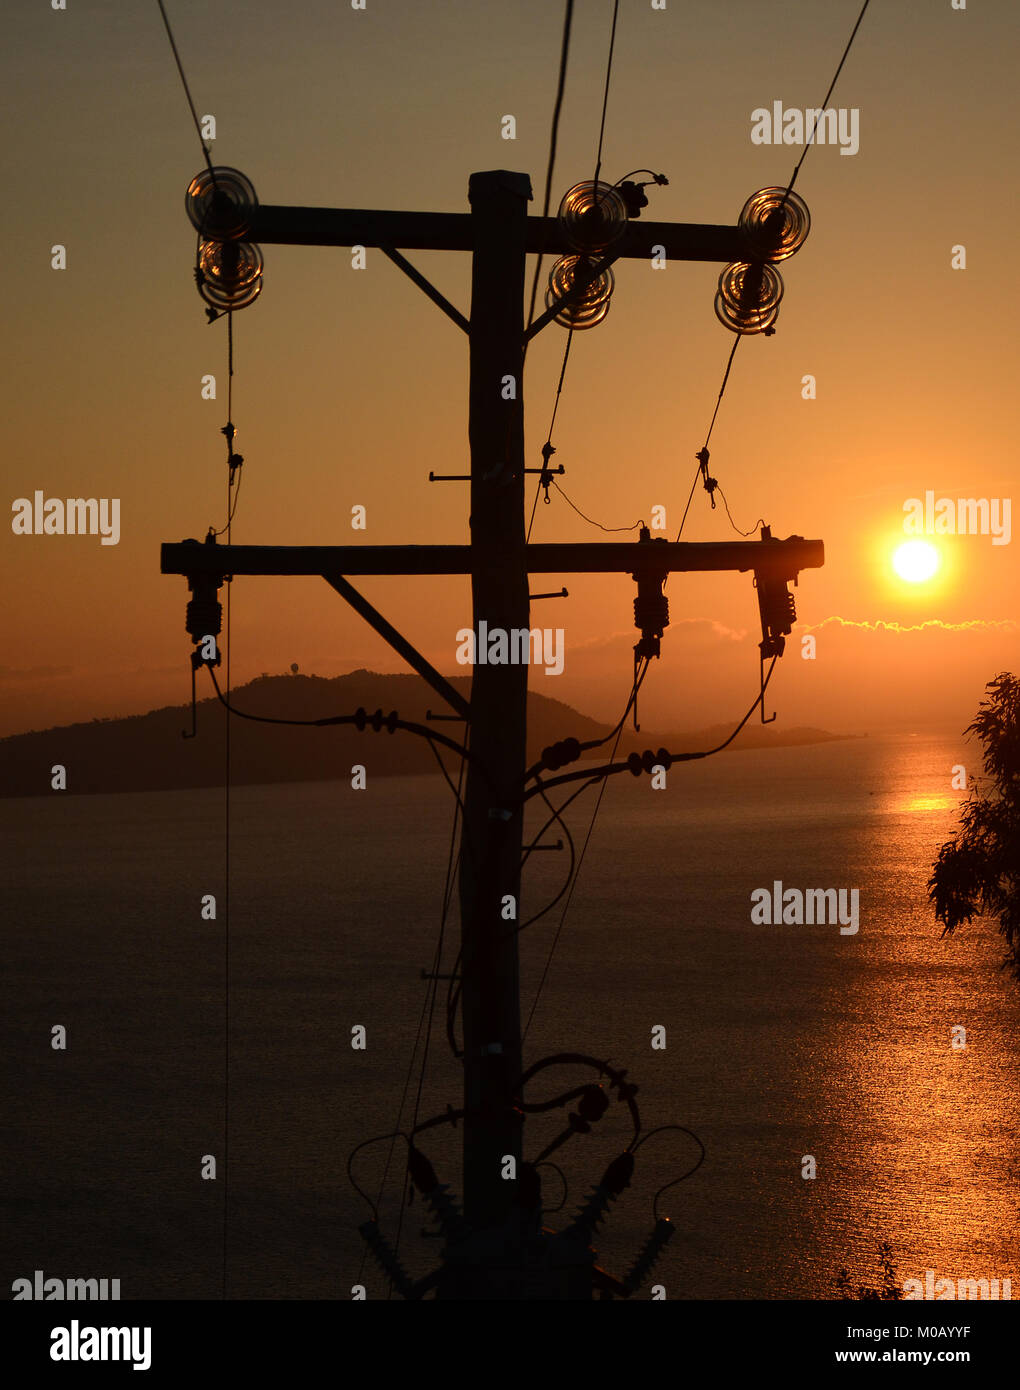 Telefonmast in Silhouette am schönen Sonnenuntergang, faseroptische Kommunikation Stockfoto